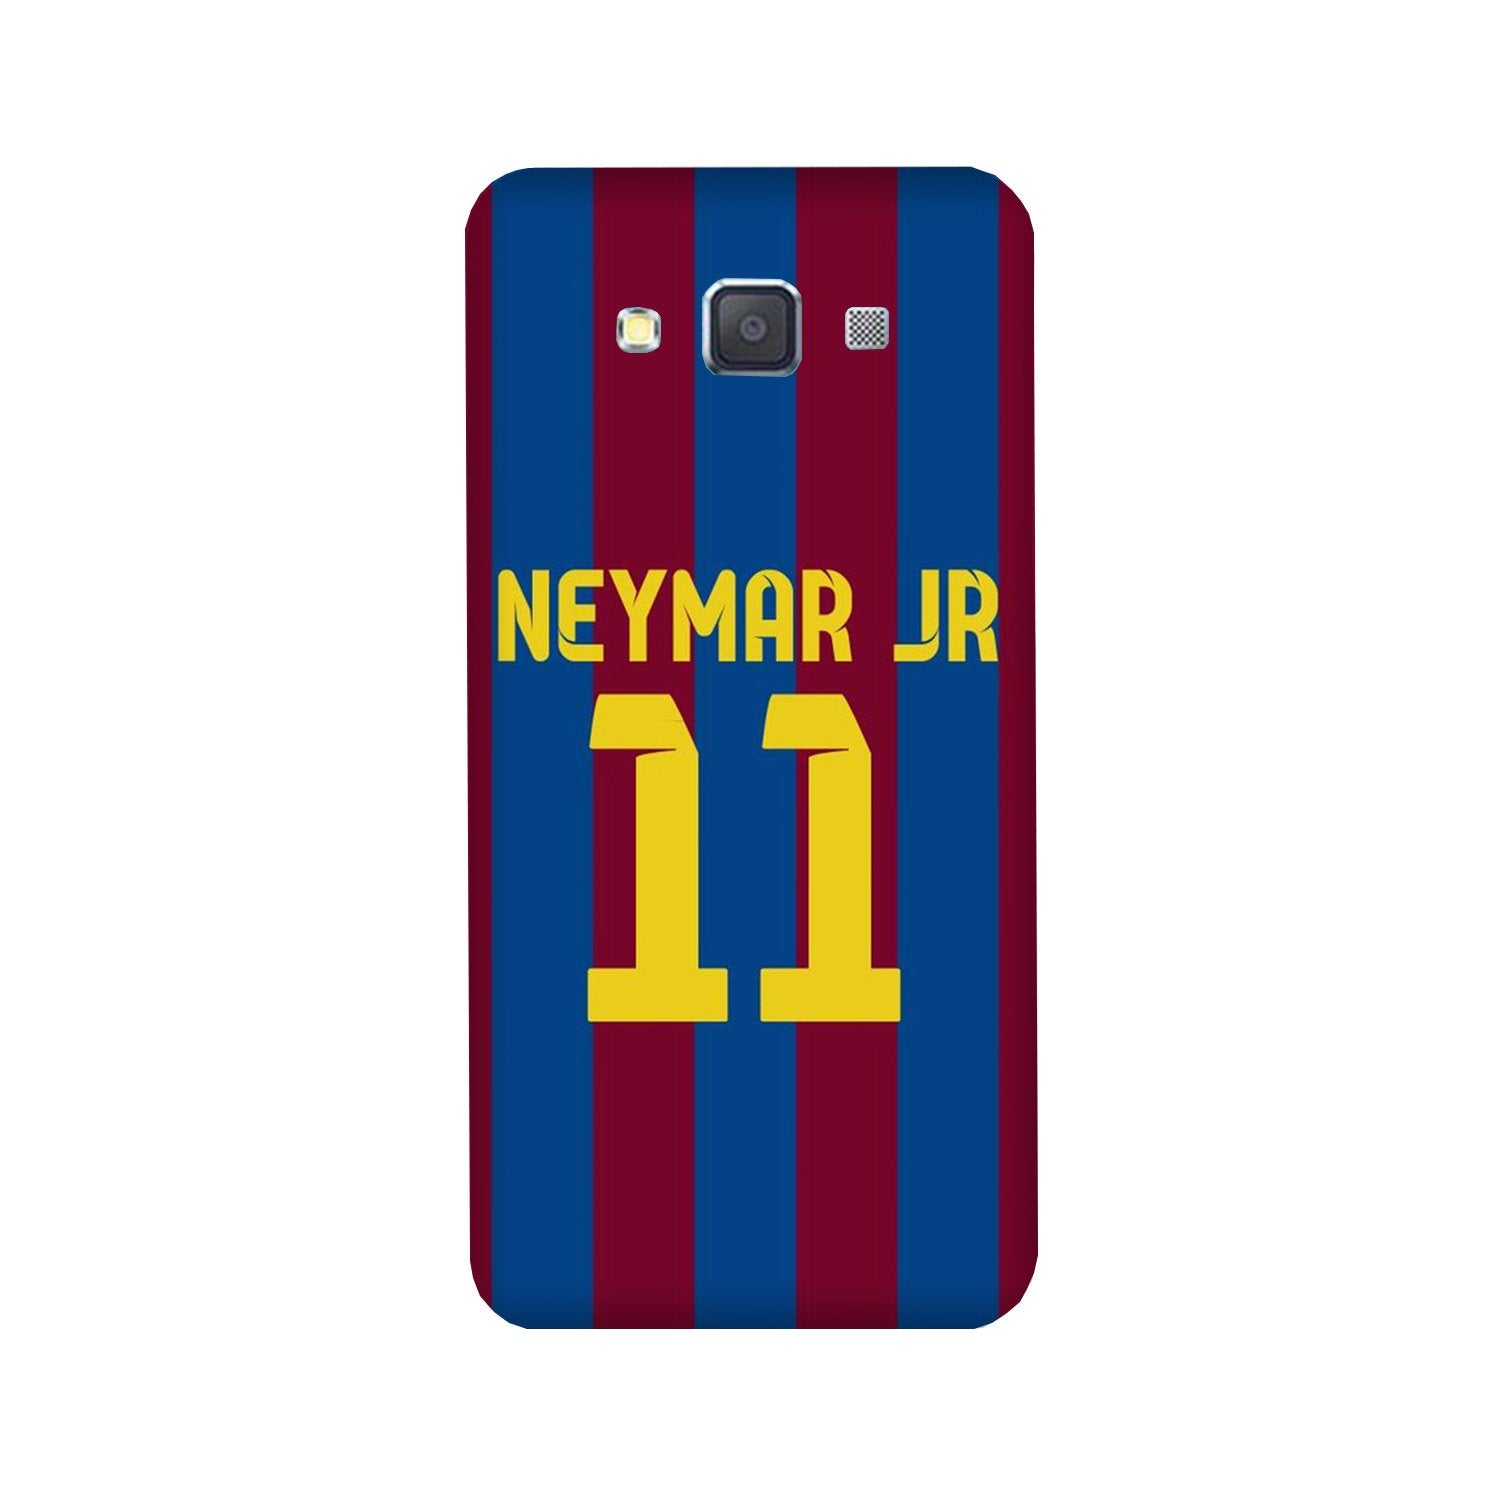 Neymar Jr Case for Galaxy J5 (2016)  (Design - 162)